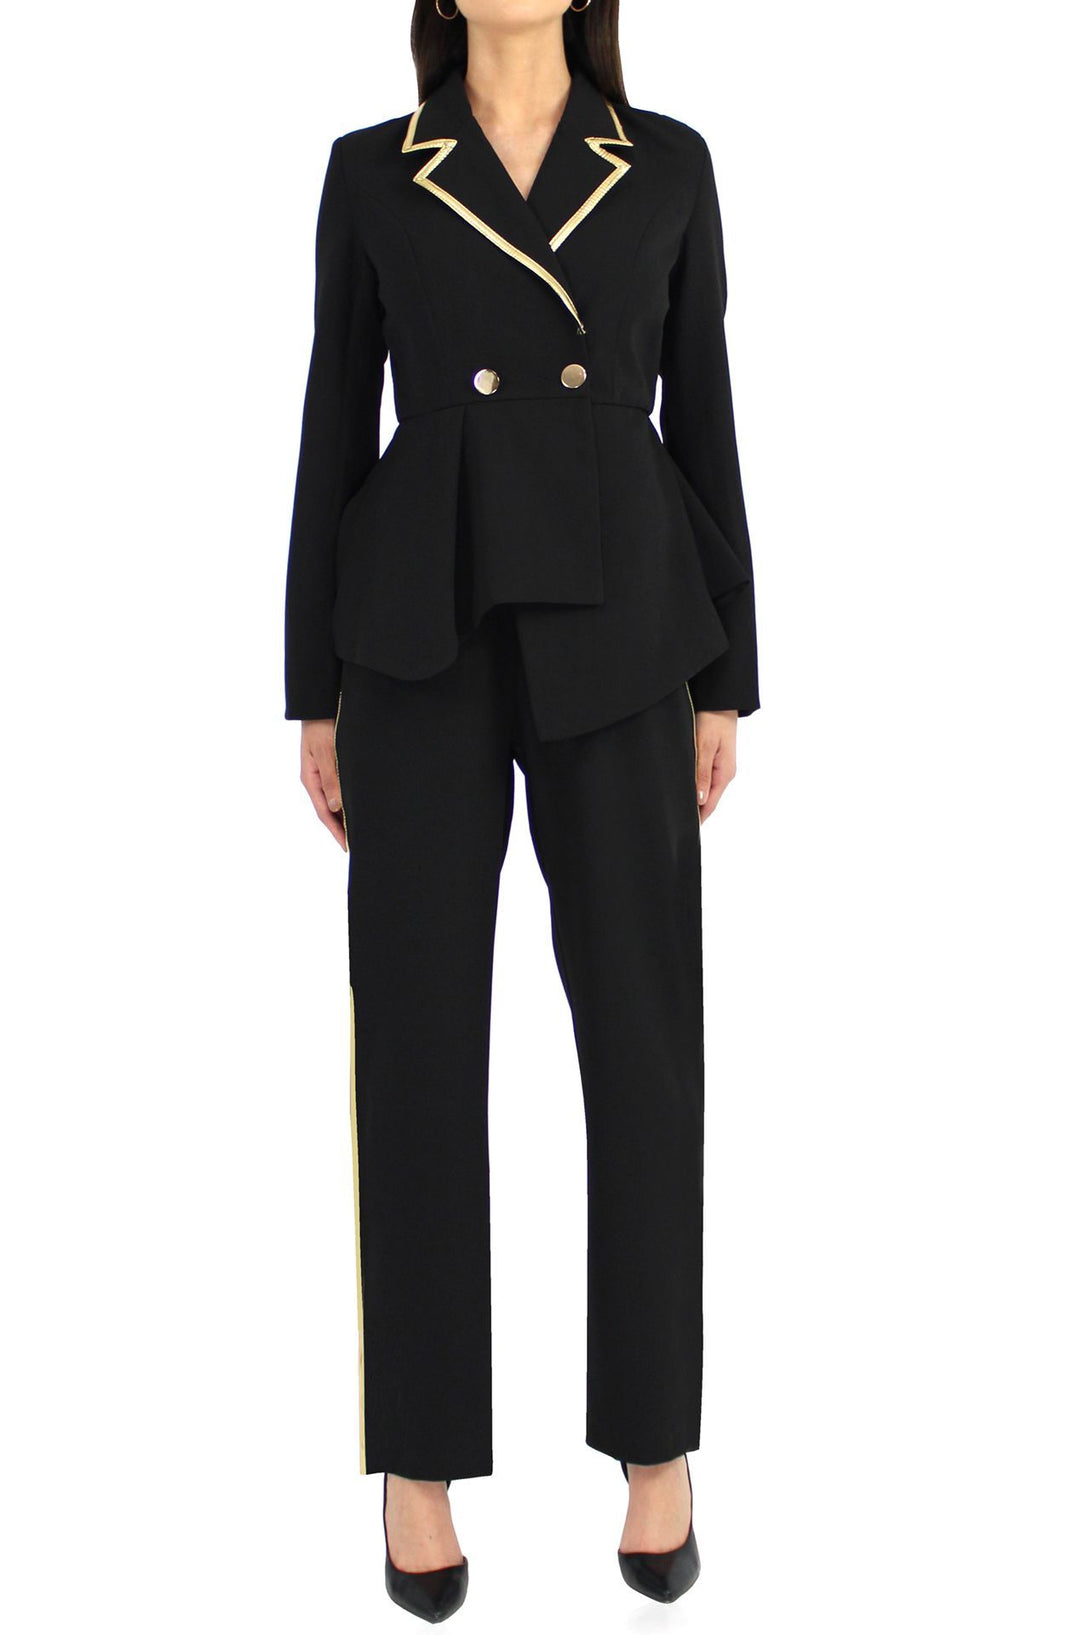 Women-Designer-Black-Matching-Suit-By-Kyle-Richard